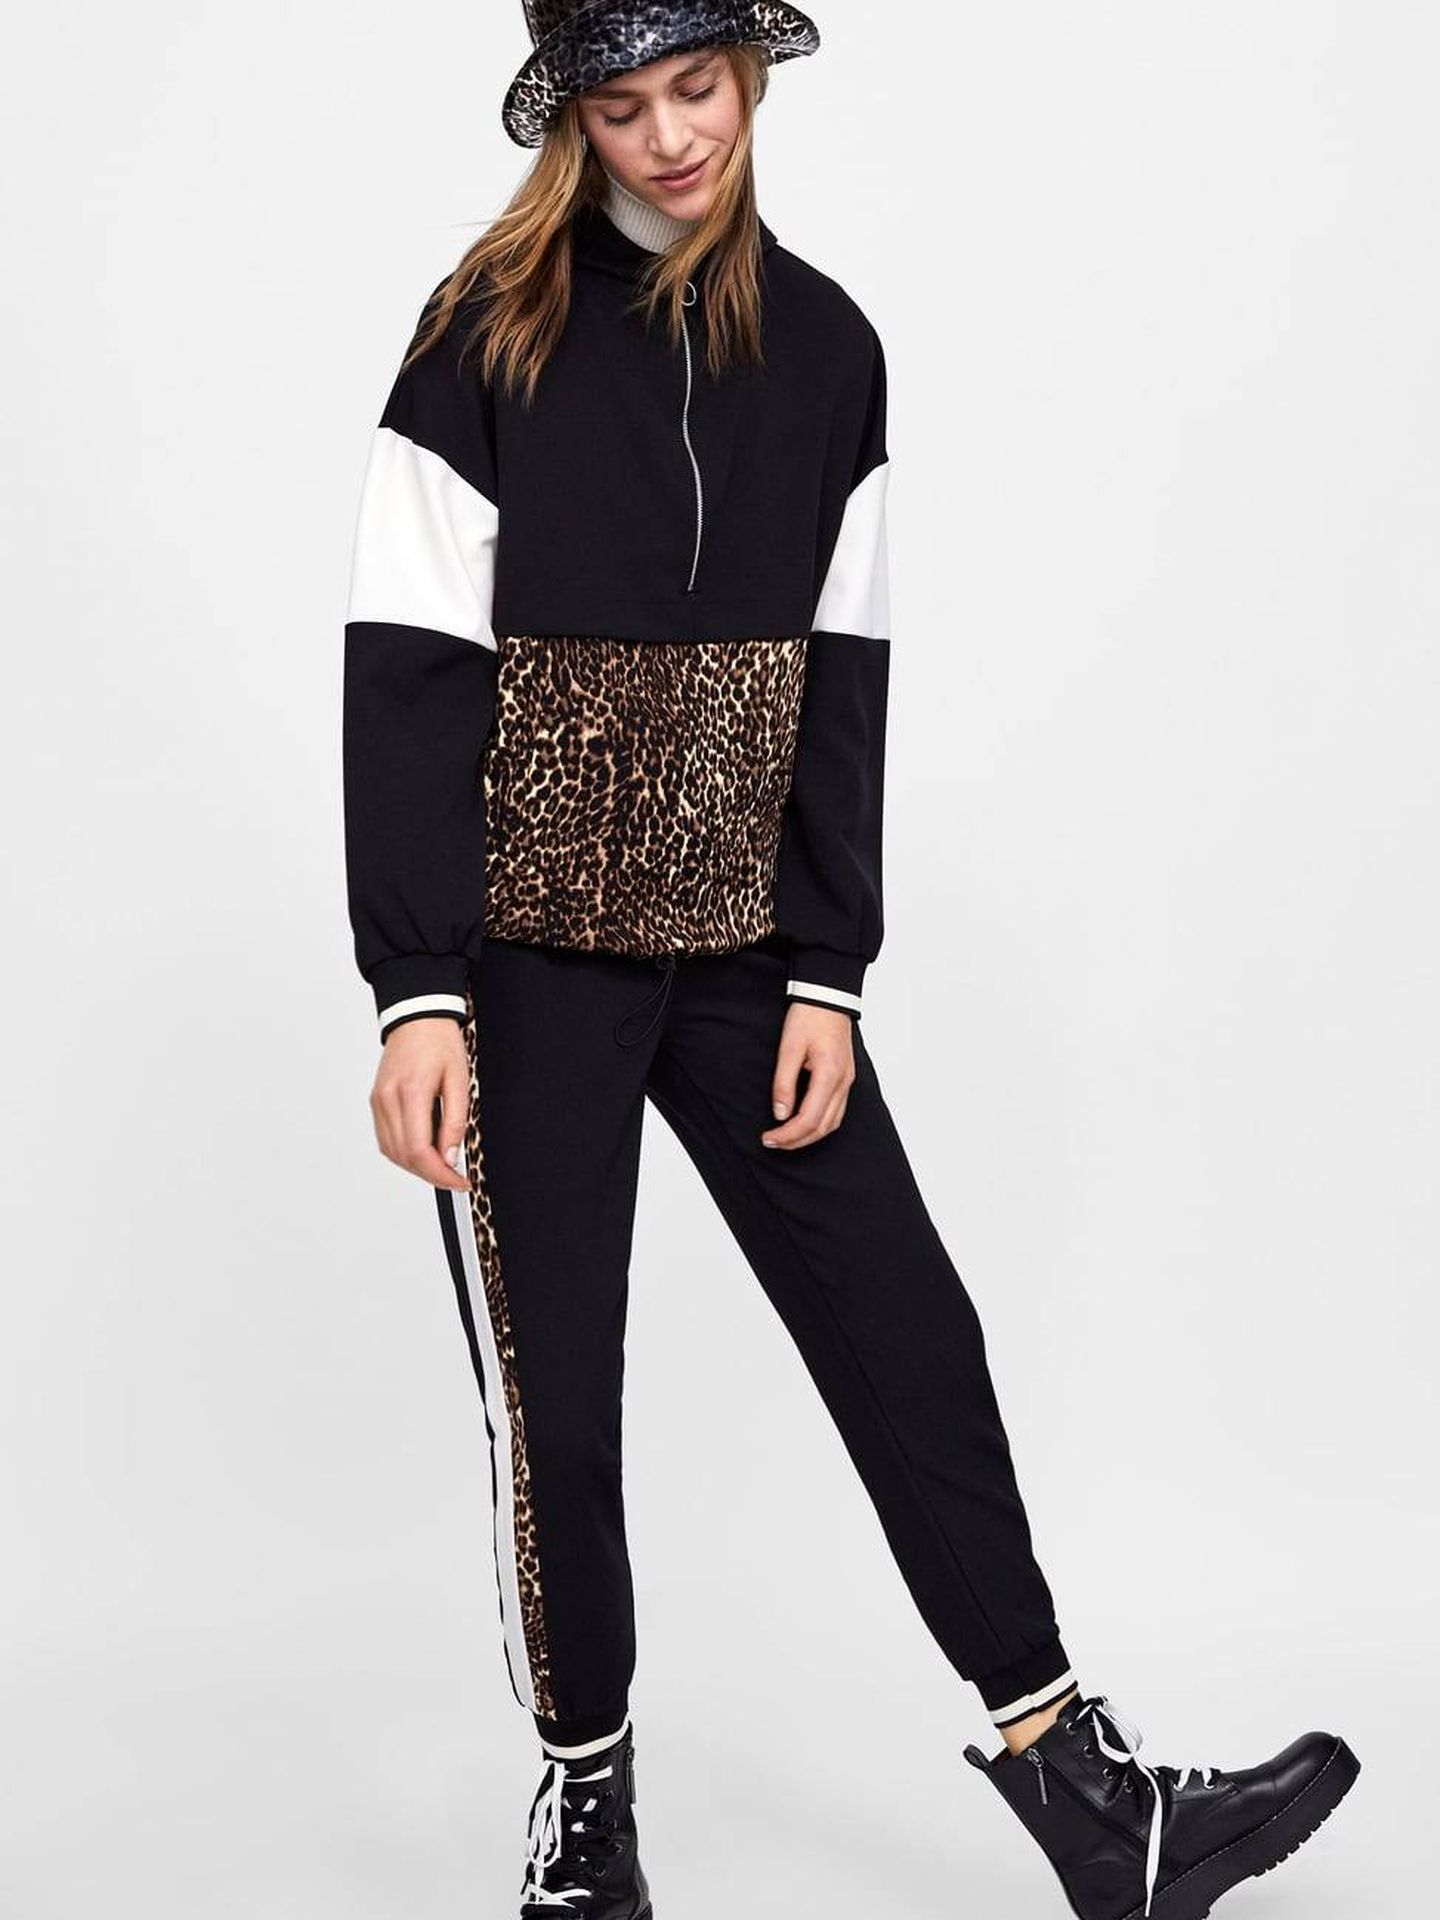 El chándal por Zara: chaqueta (29,95 €) y pantalón (22,95 €).